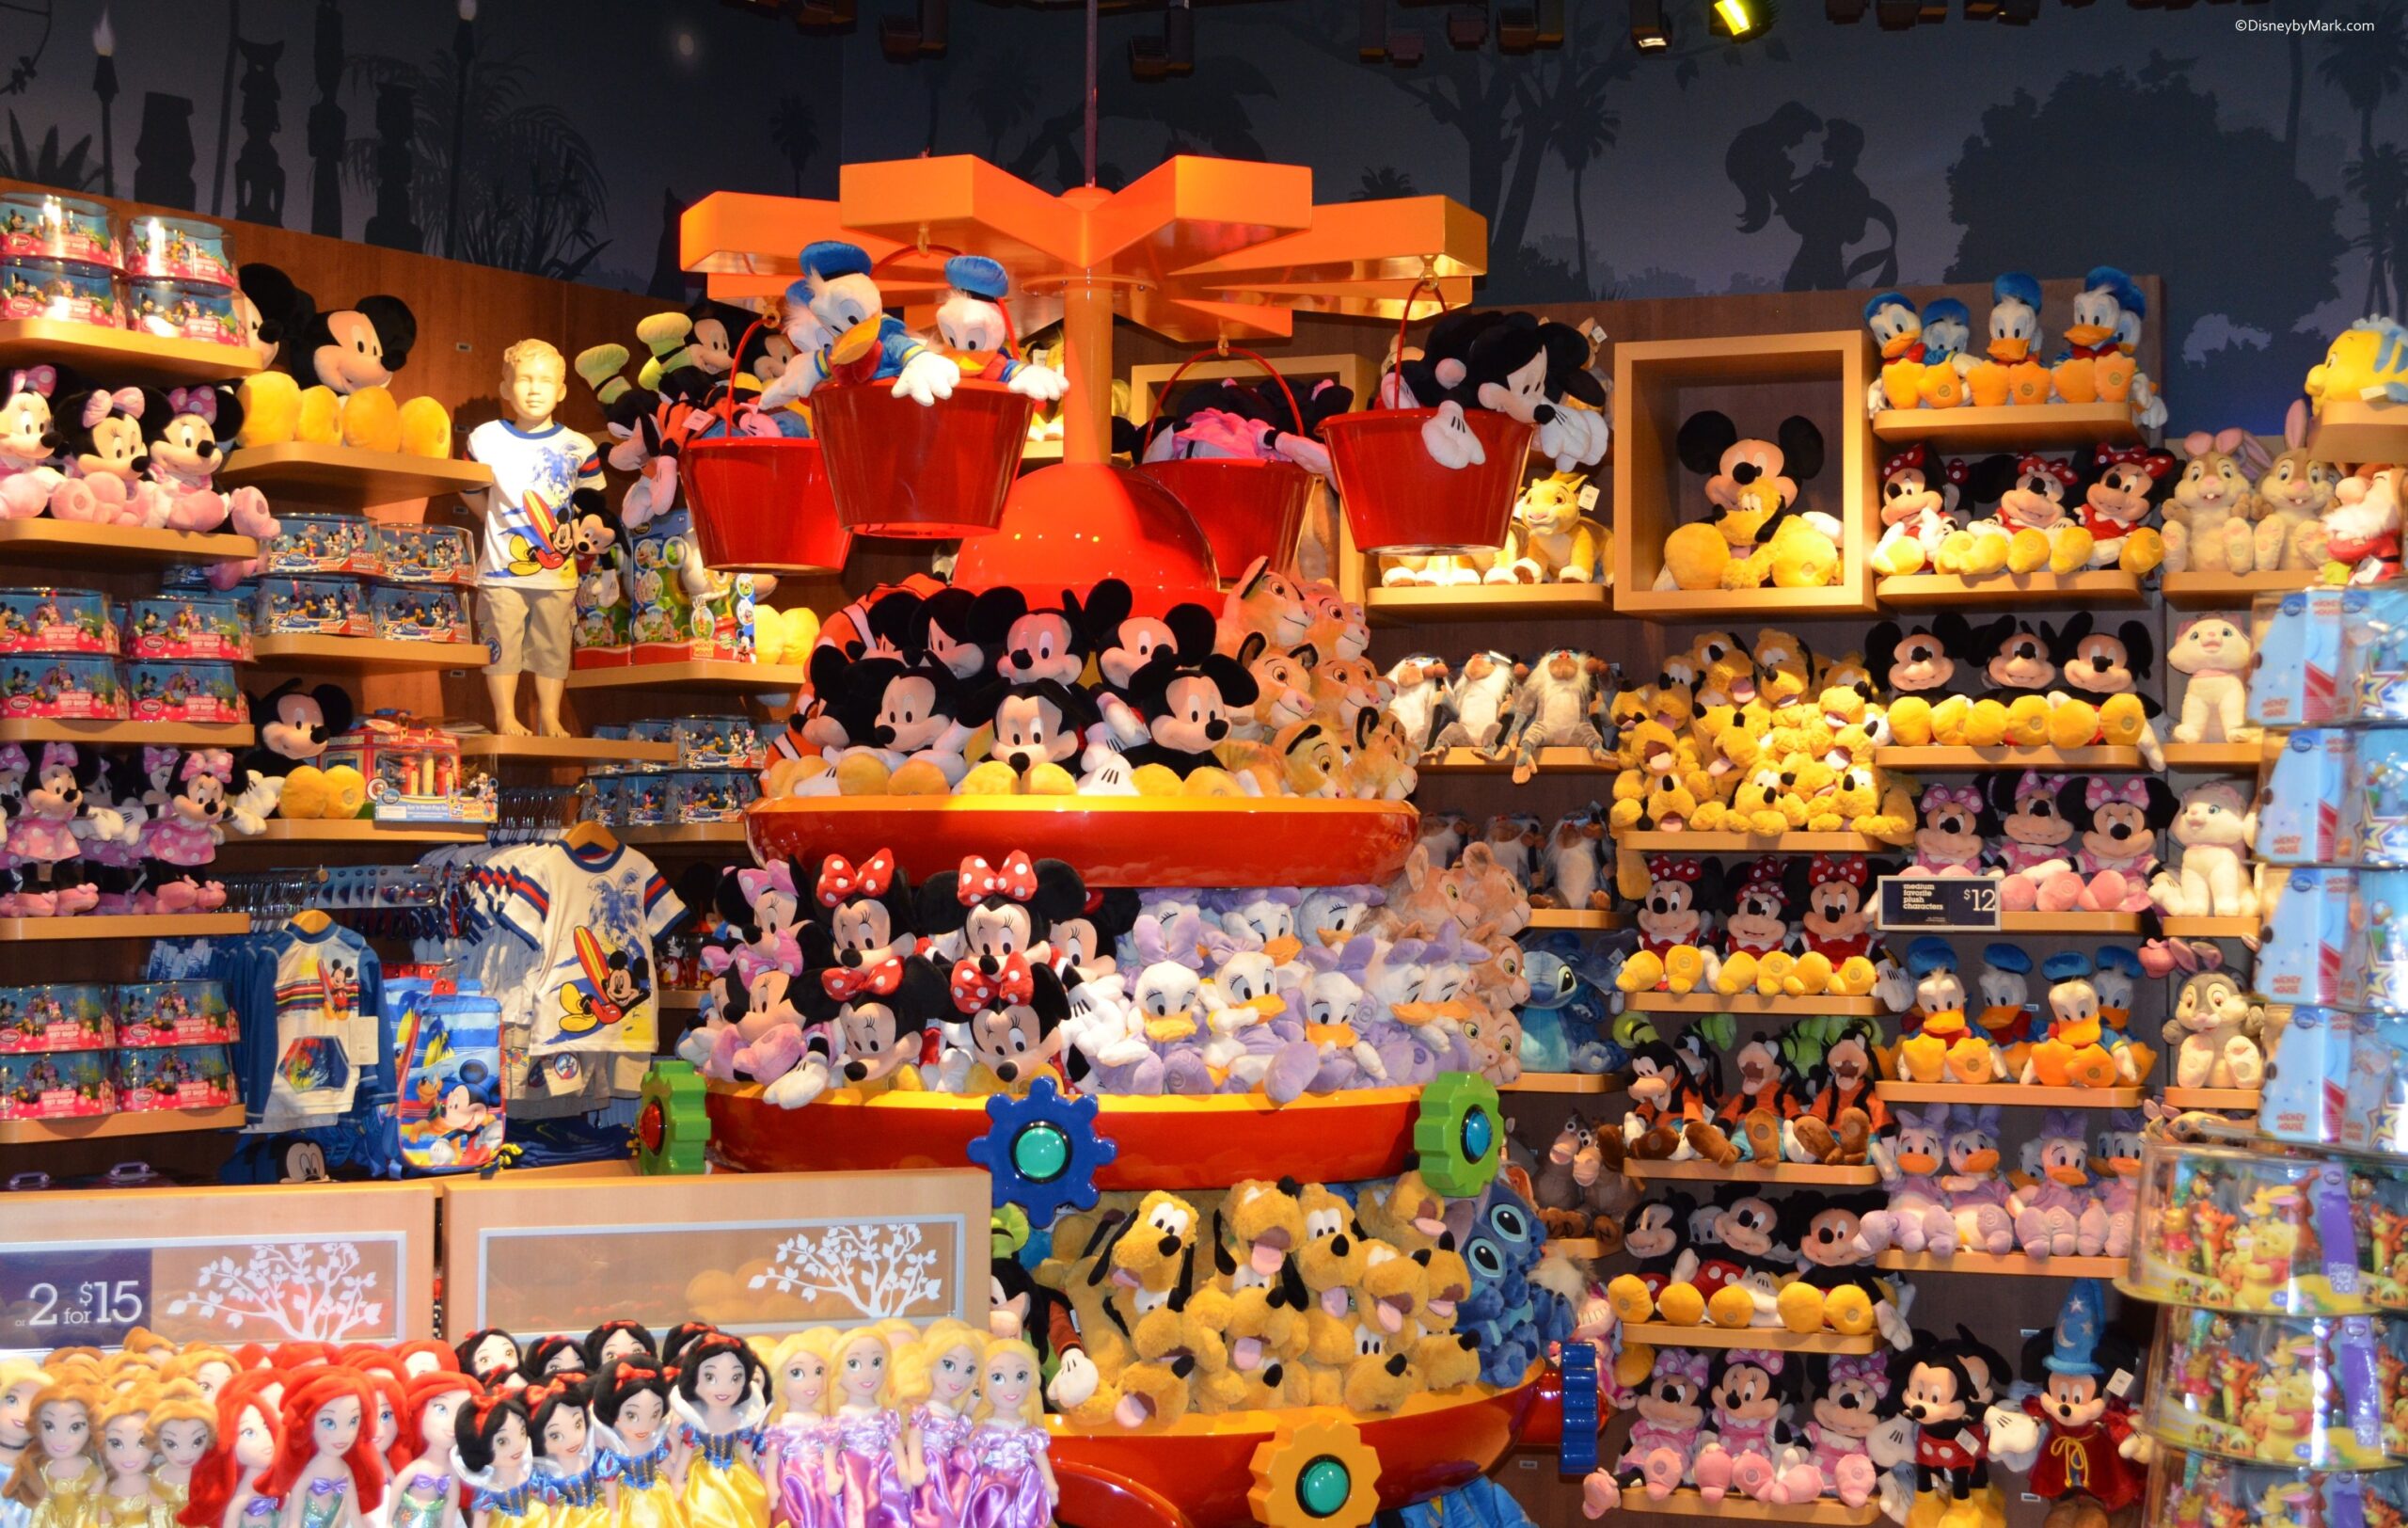 Disney store dona la magia del Natale a migliaia di bambini